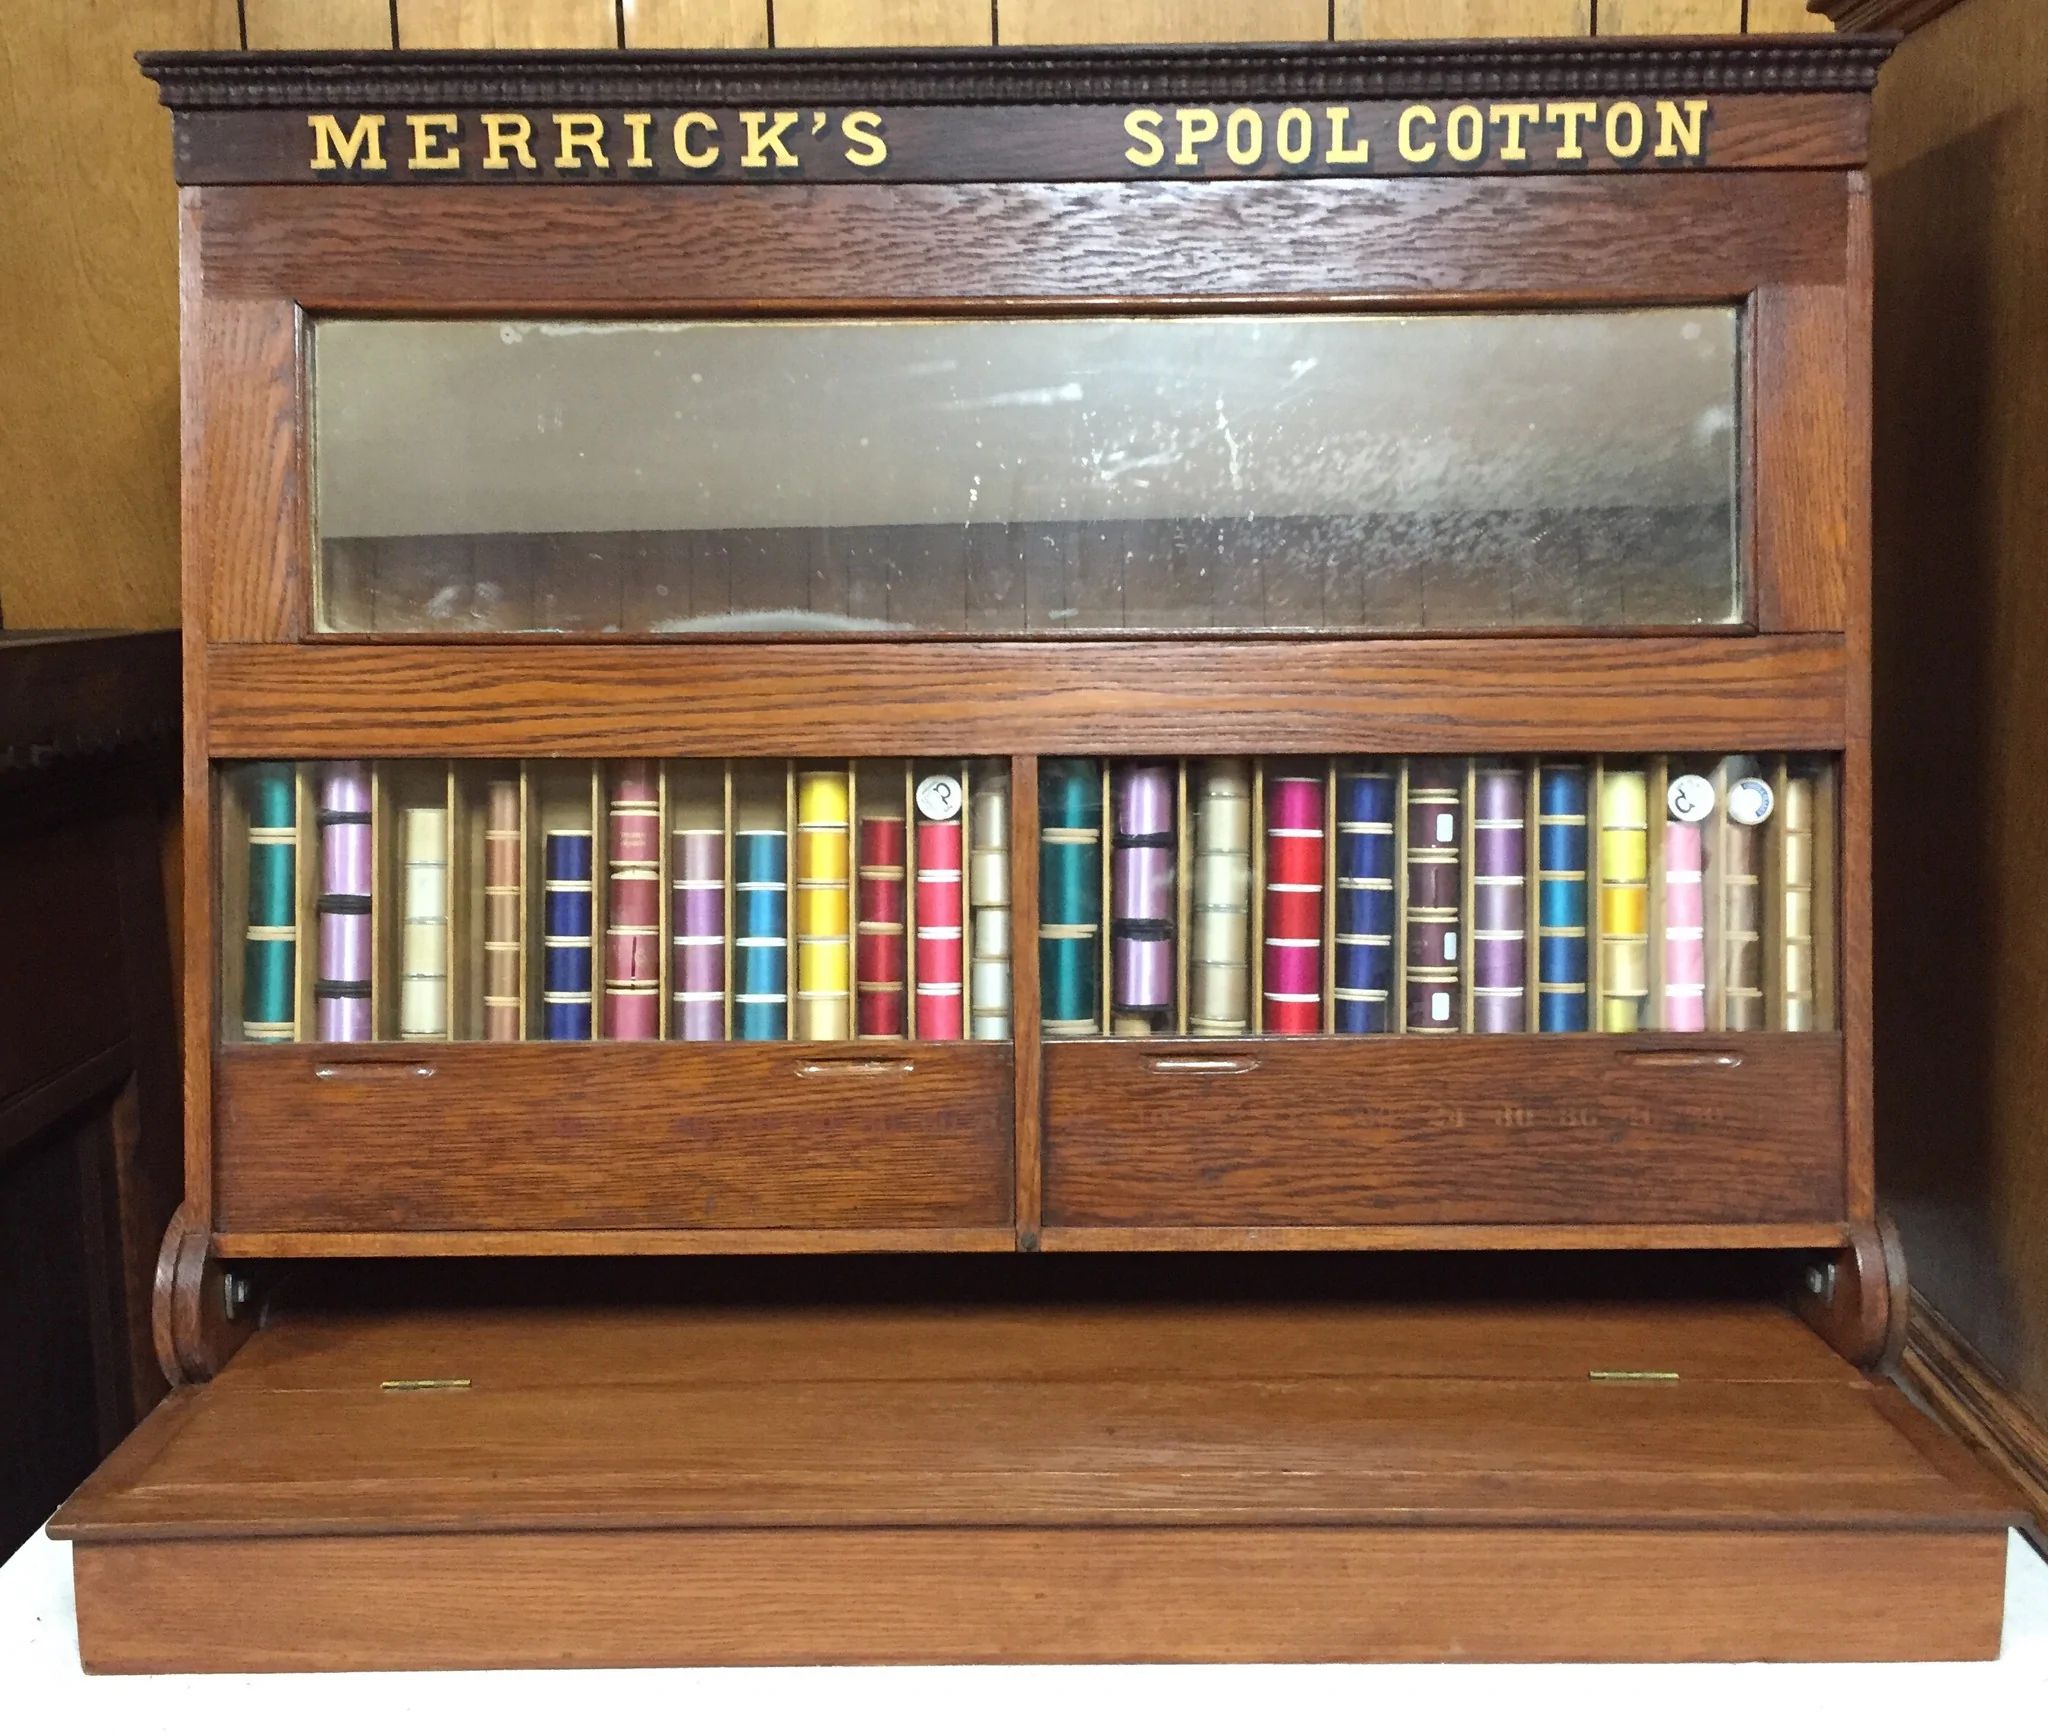 The Merrick Thread Company